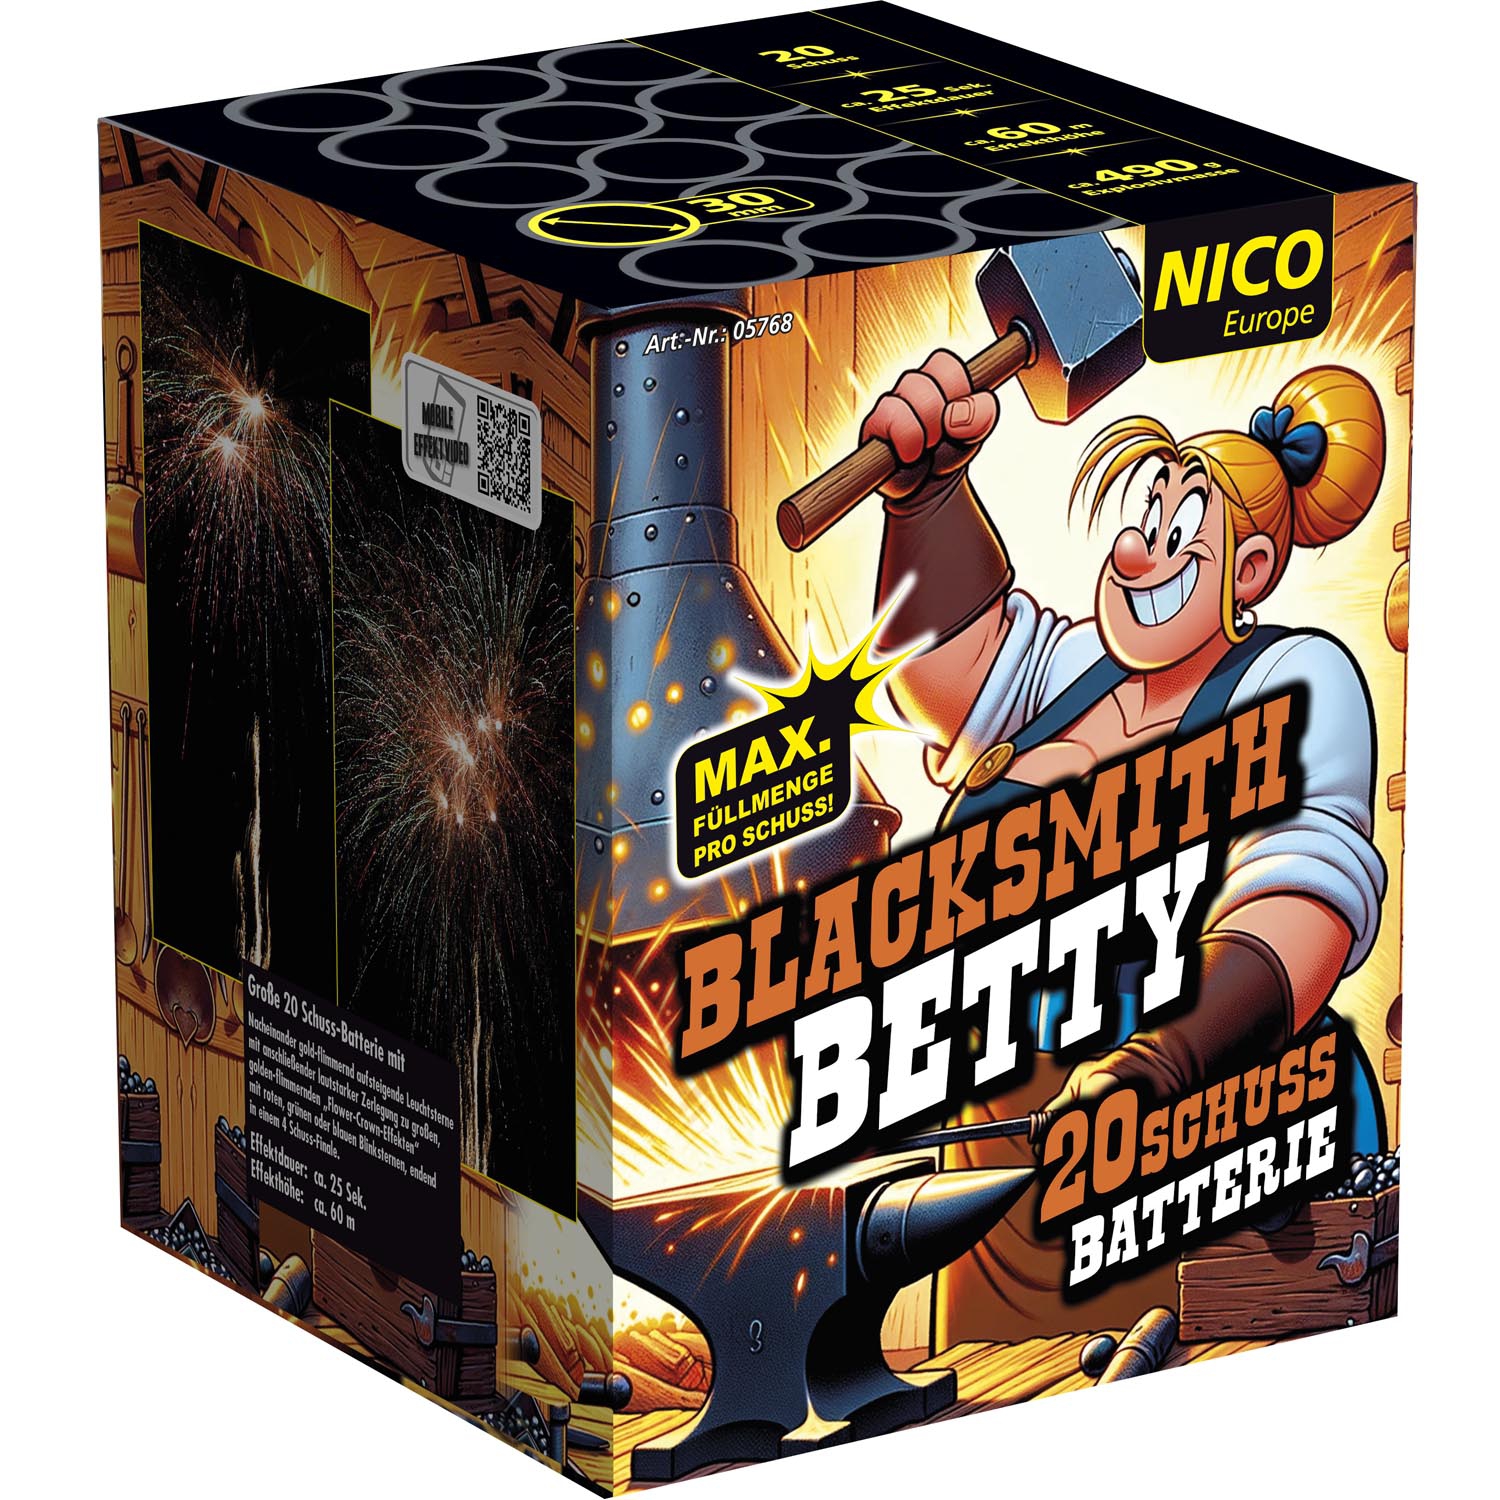 Blacksmith Betty  20 Schuss